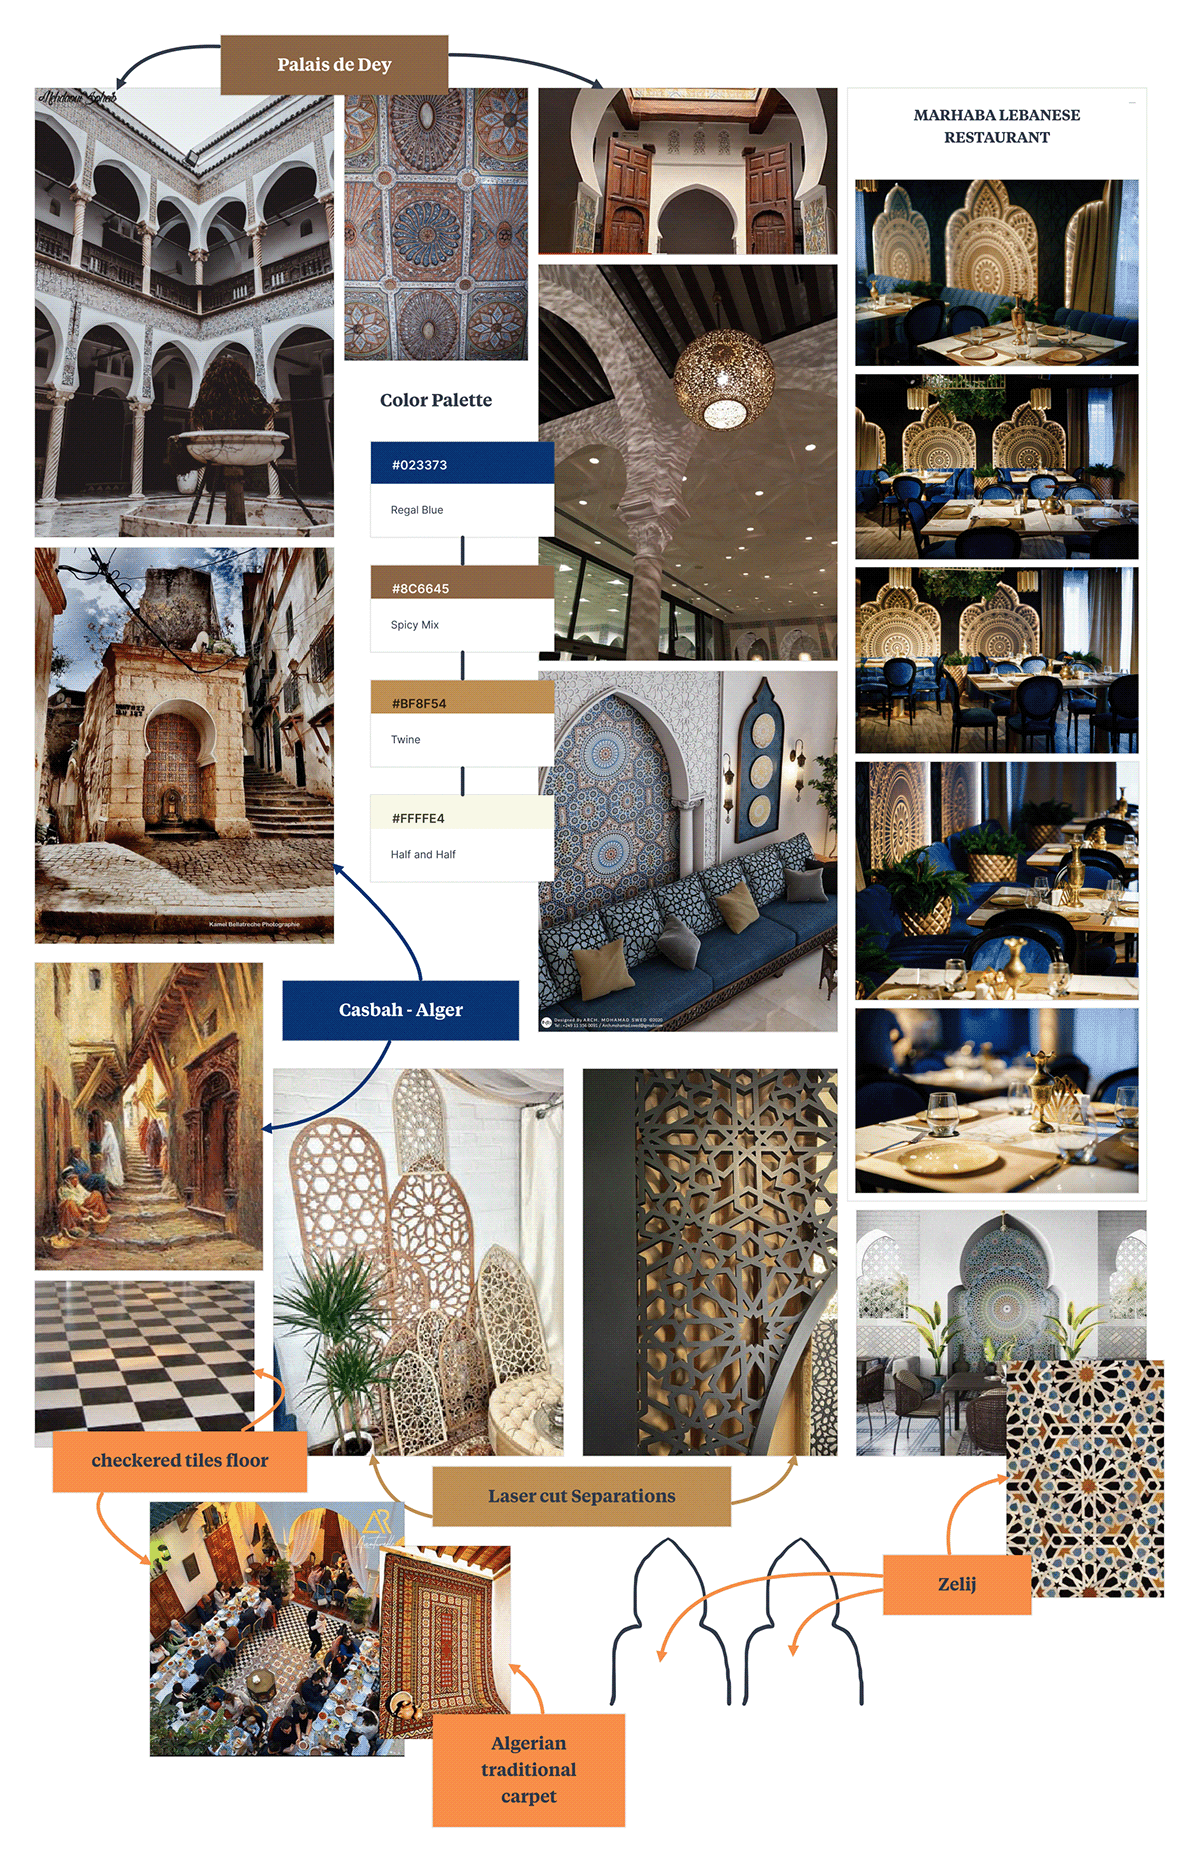 restaurant interior design  Algeria algerie cafe traditional D5 Render architecture cafeteria islamic